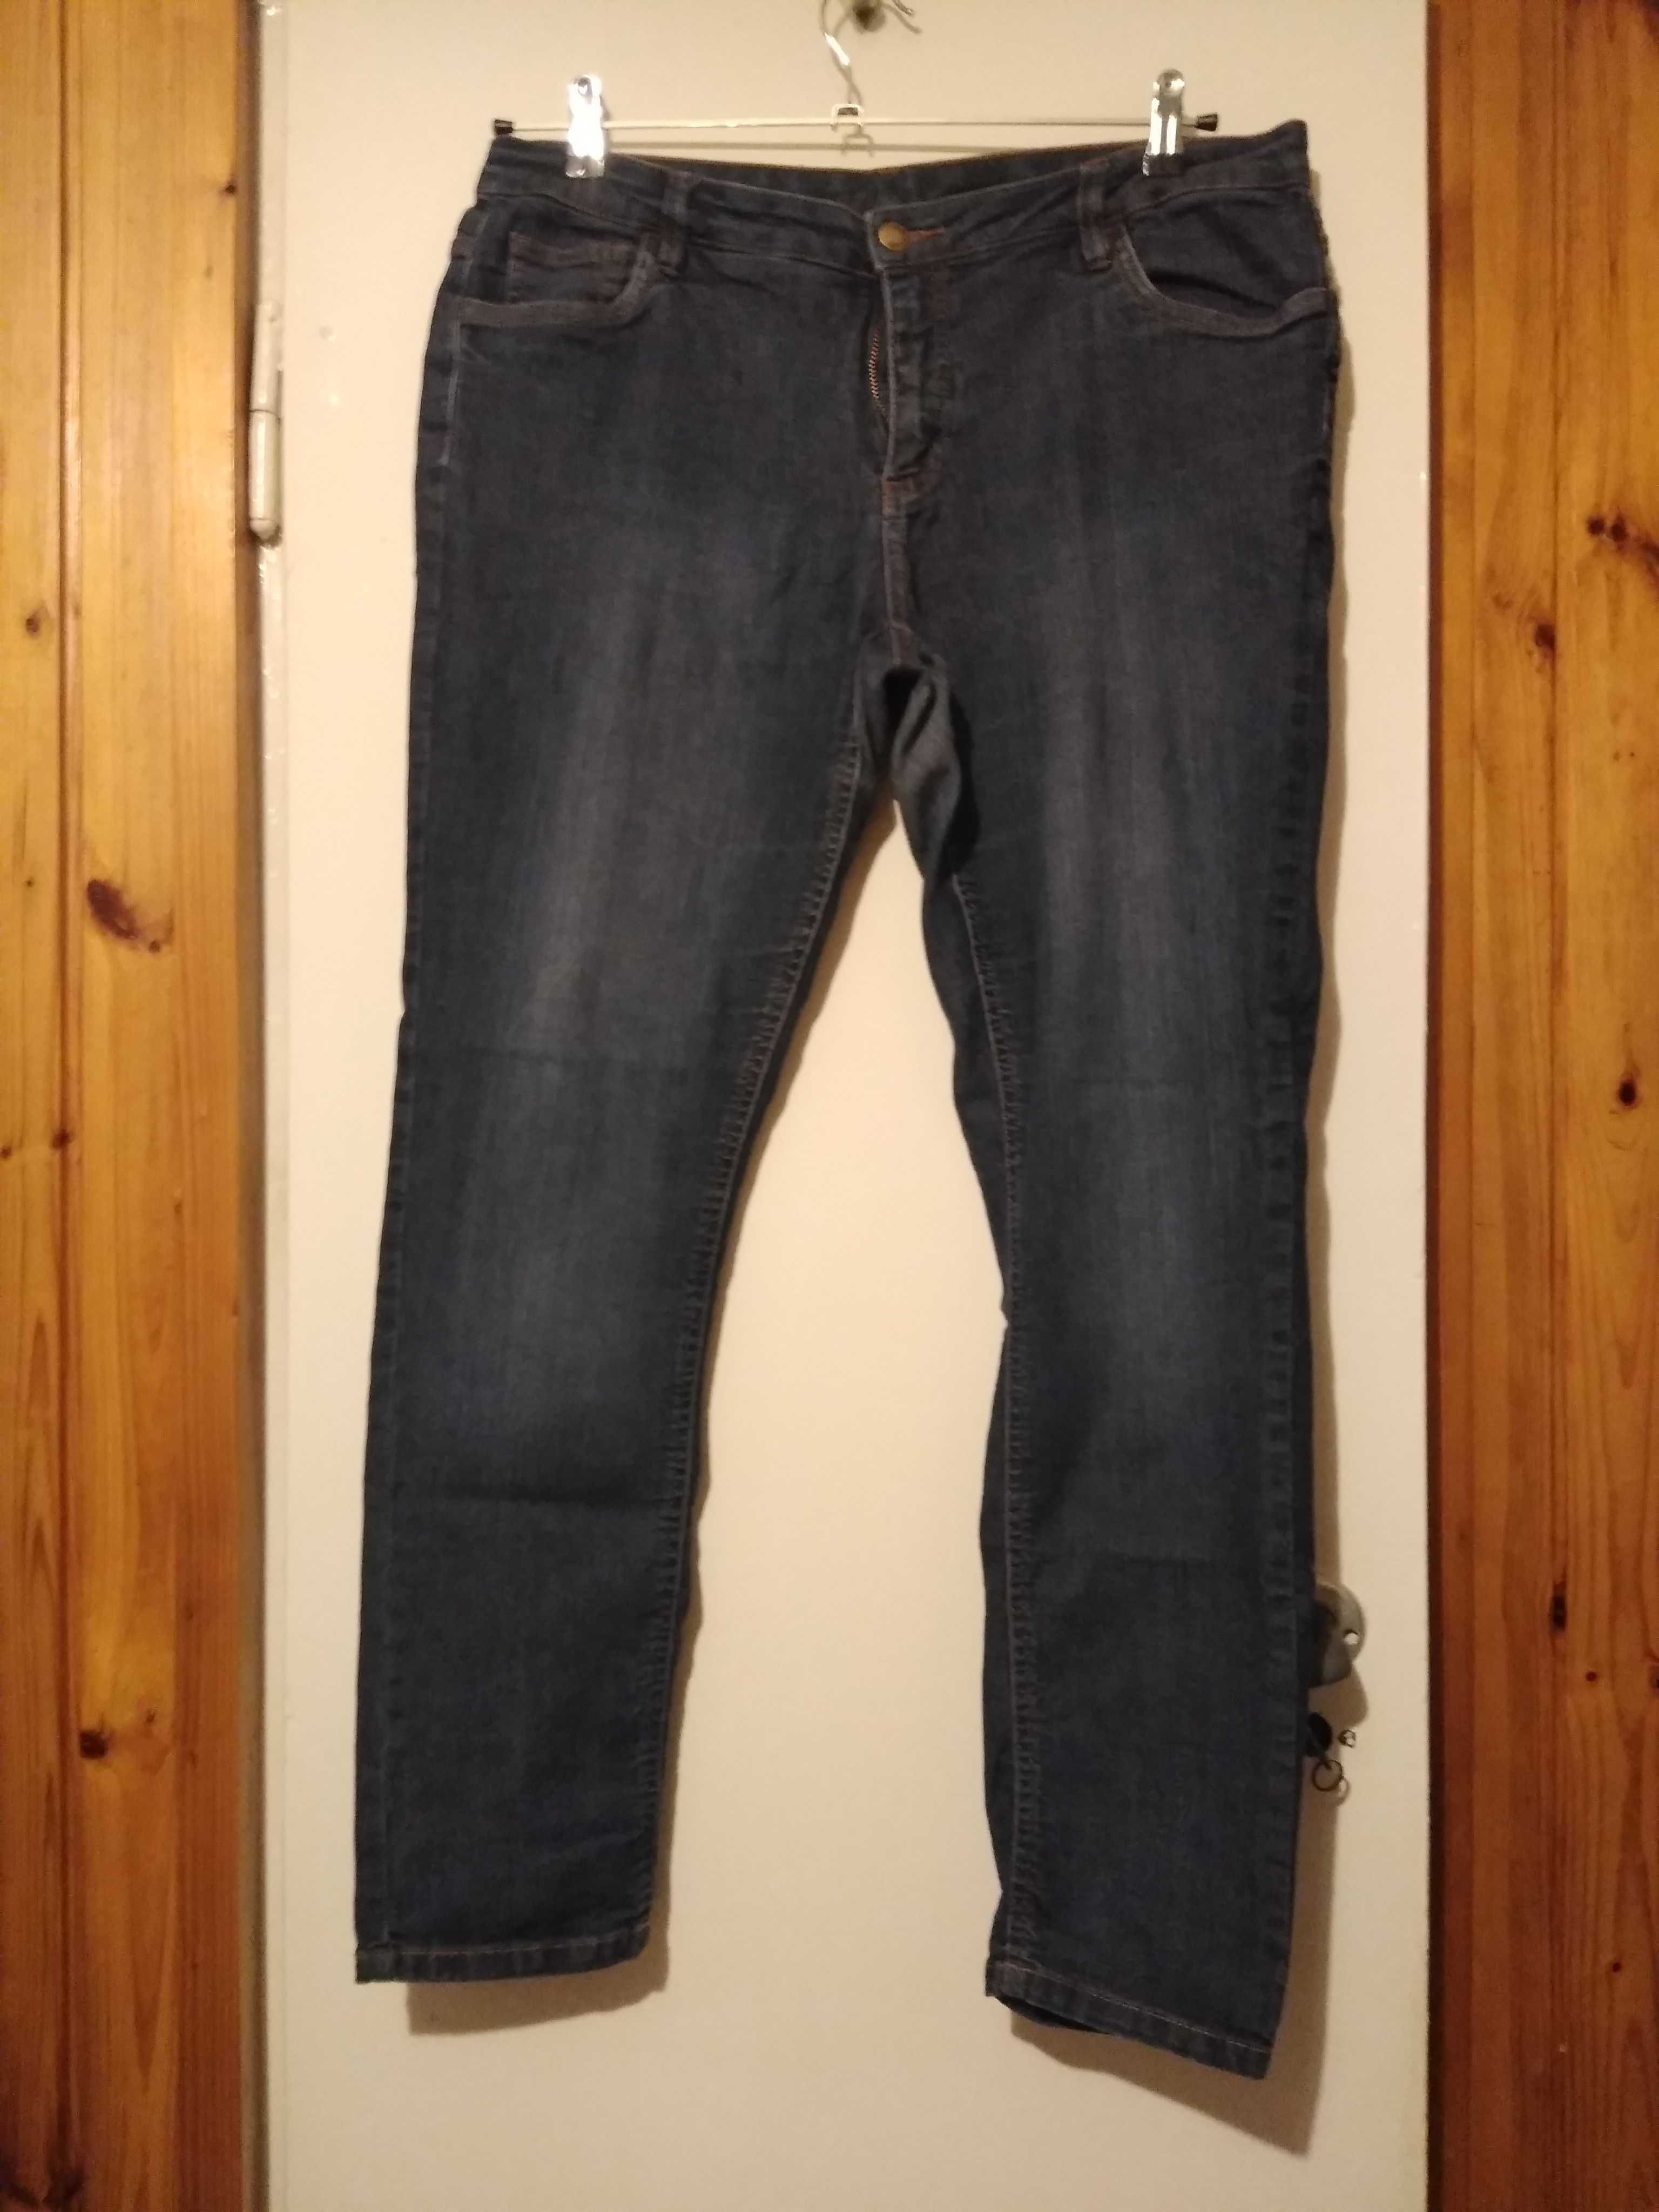 Spodnie jeansowe elastyczne jasnoniebieskie rozmiar 46/48